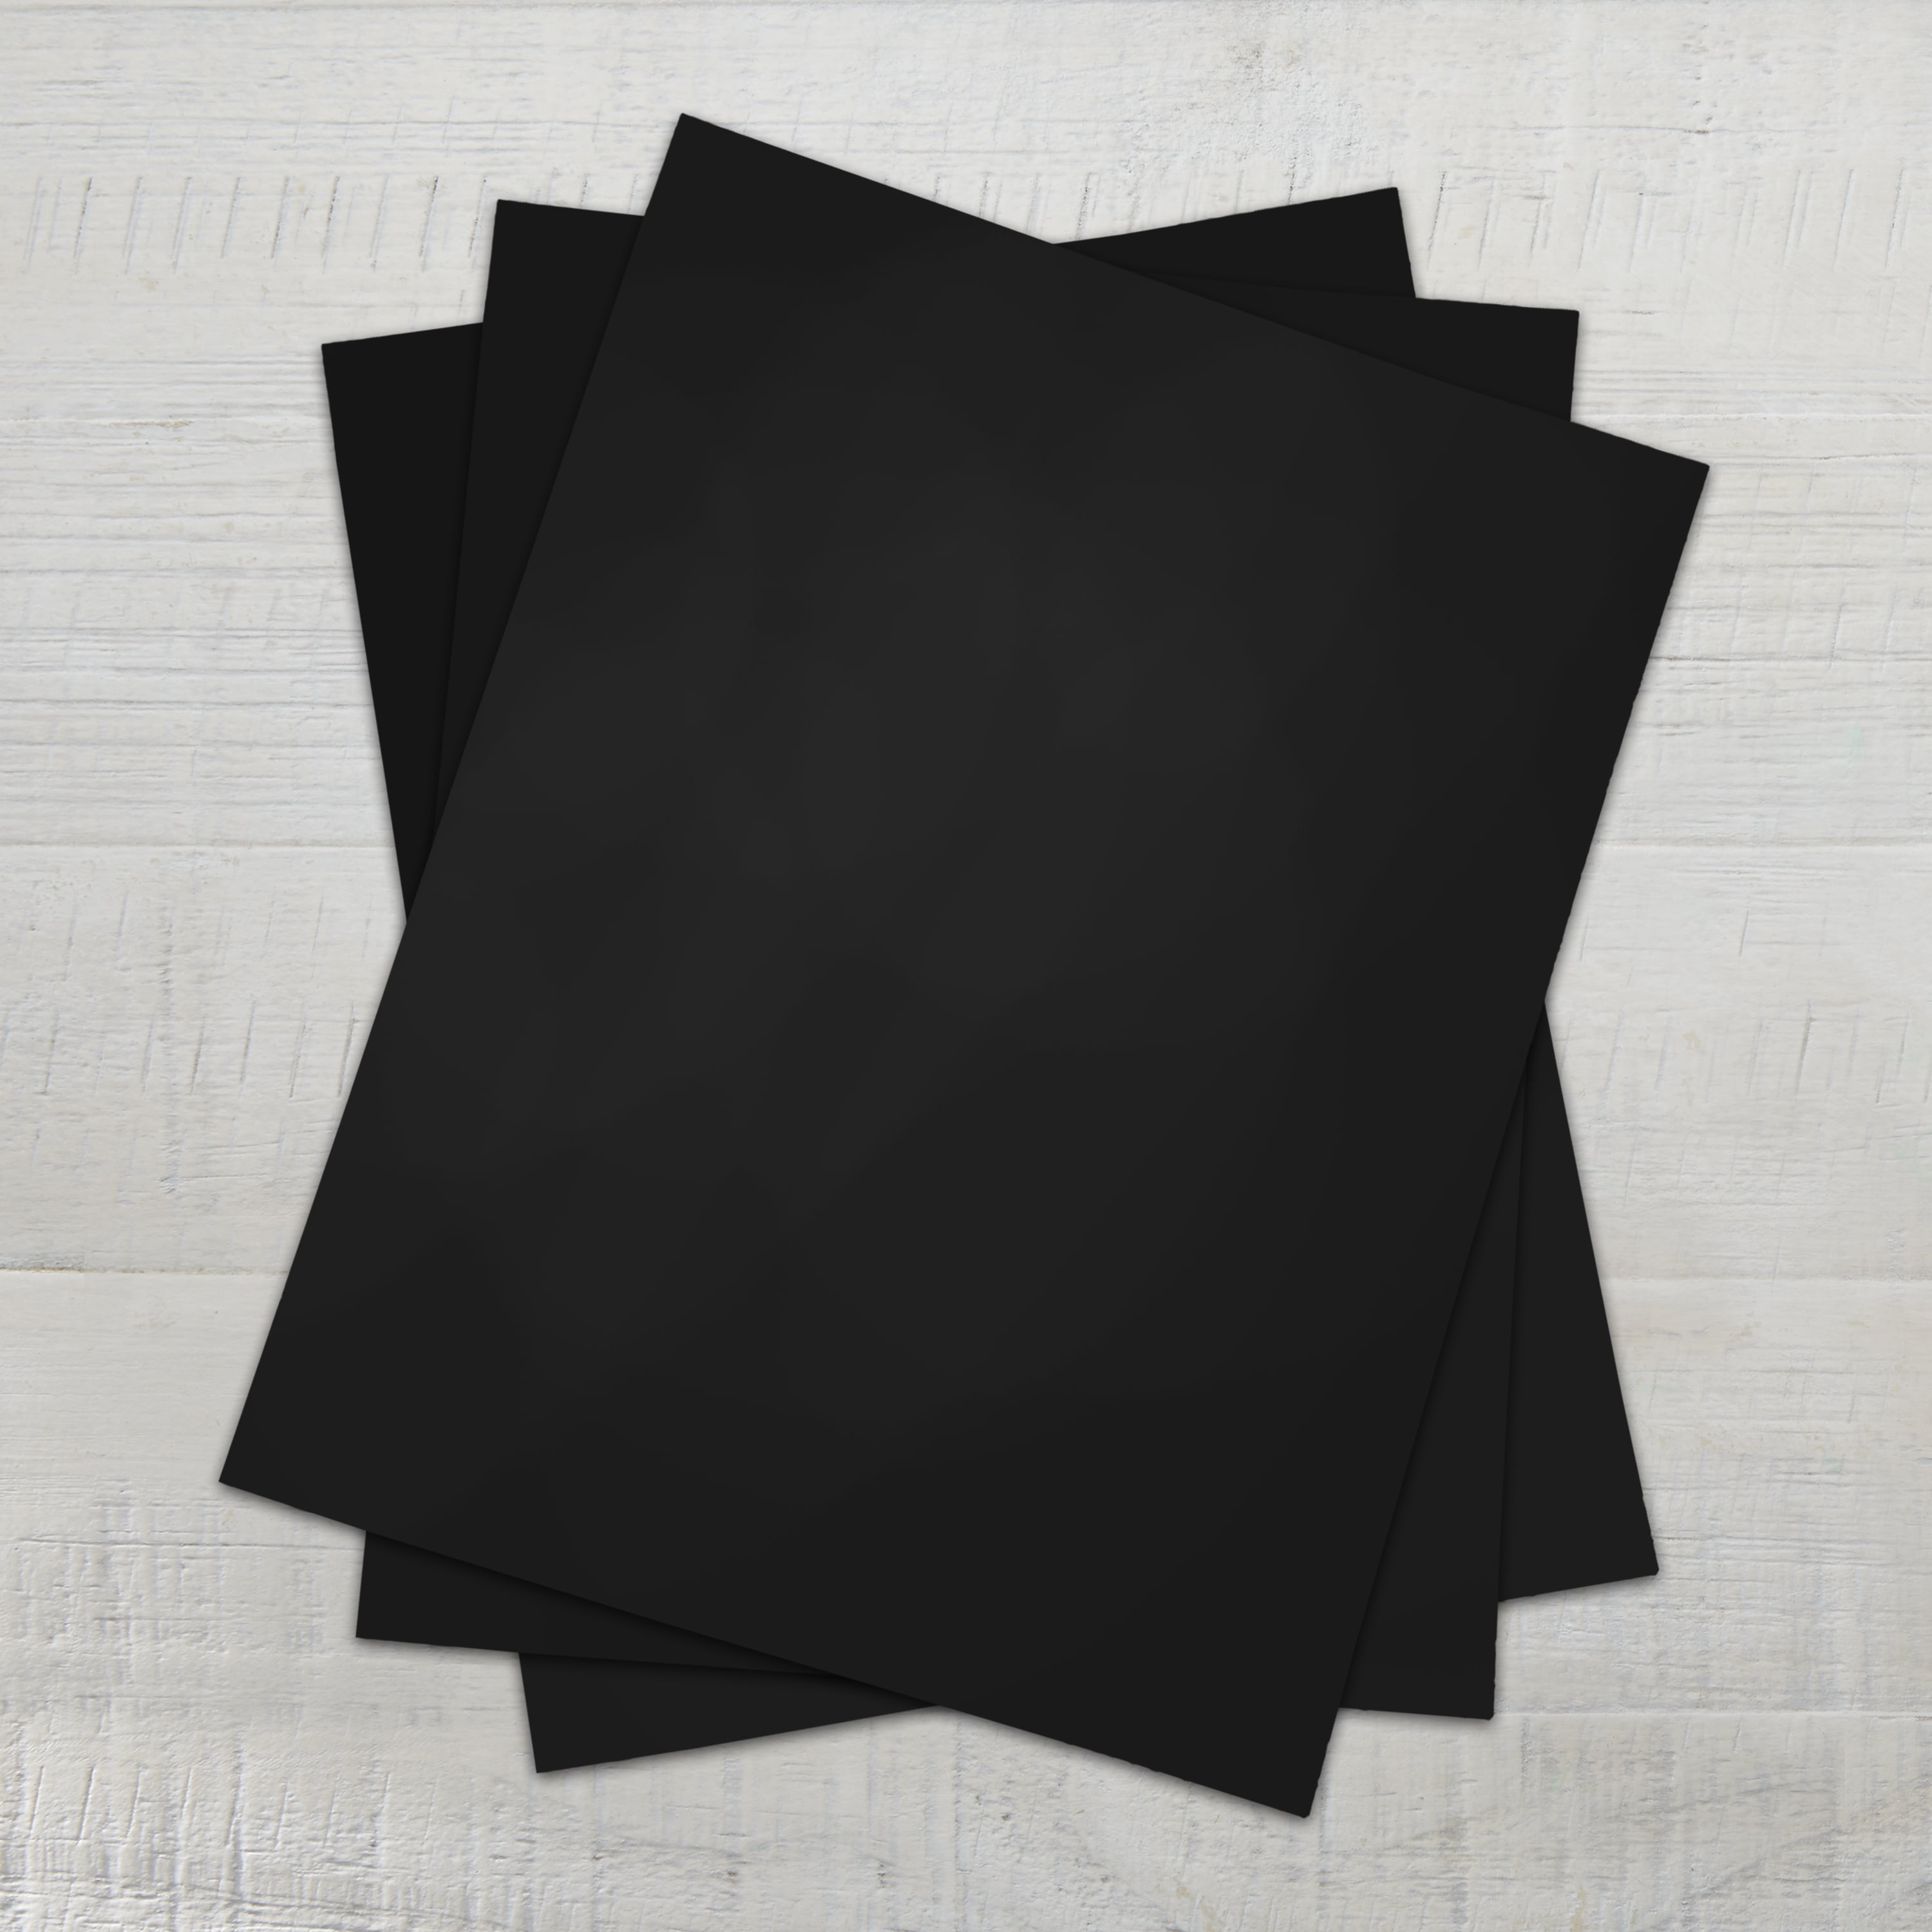 Pen + Gear Card Stock Paper, Black, 8.5 x 11, 65 lb, 480 Sheets